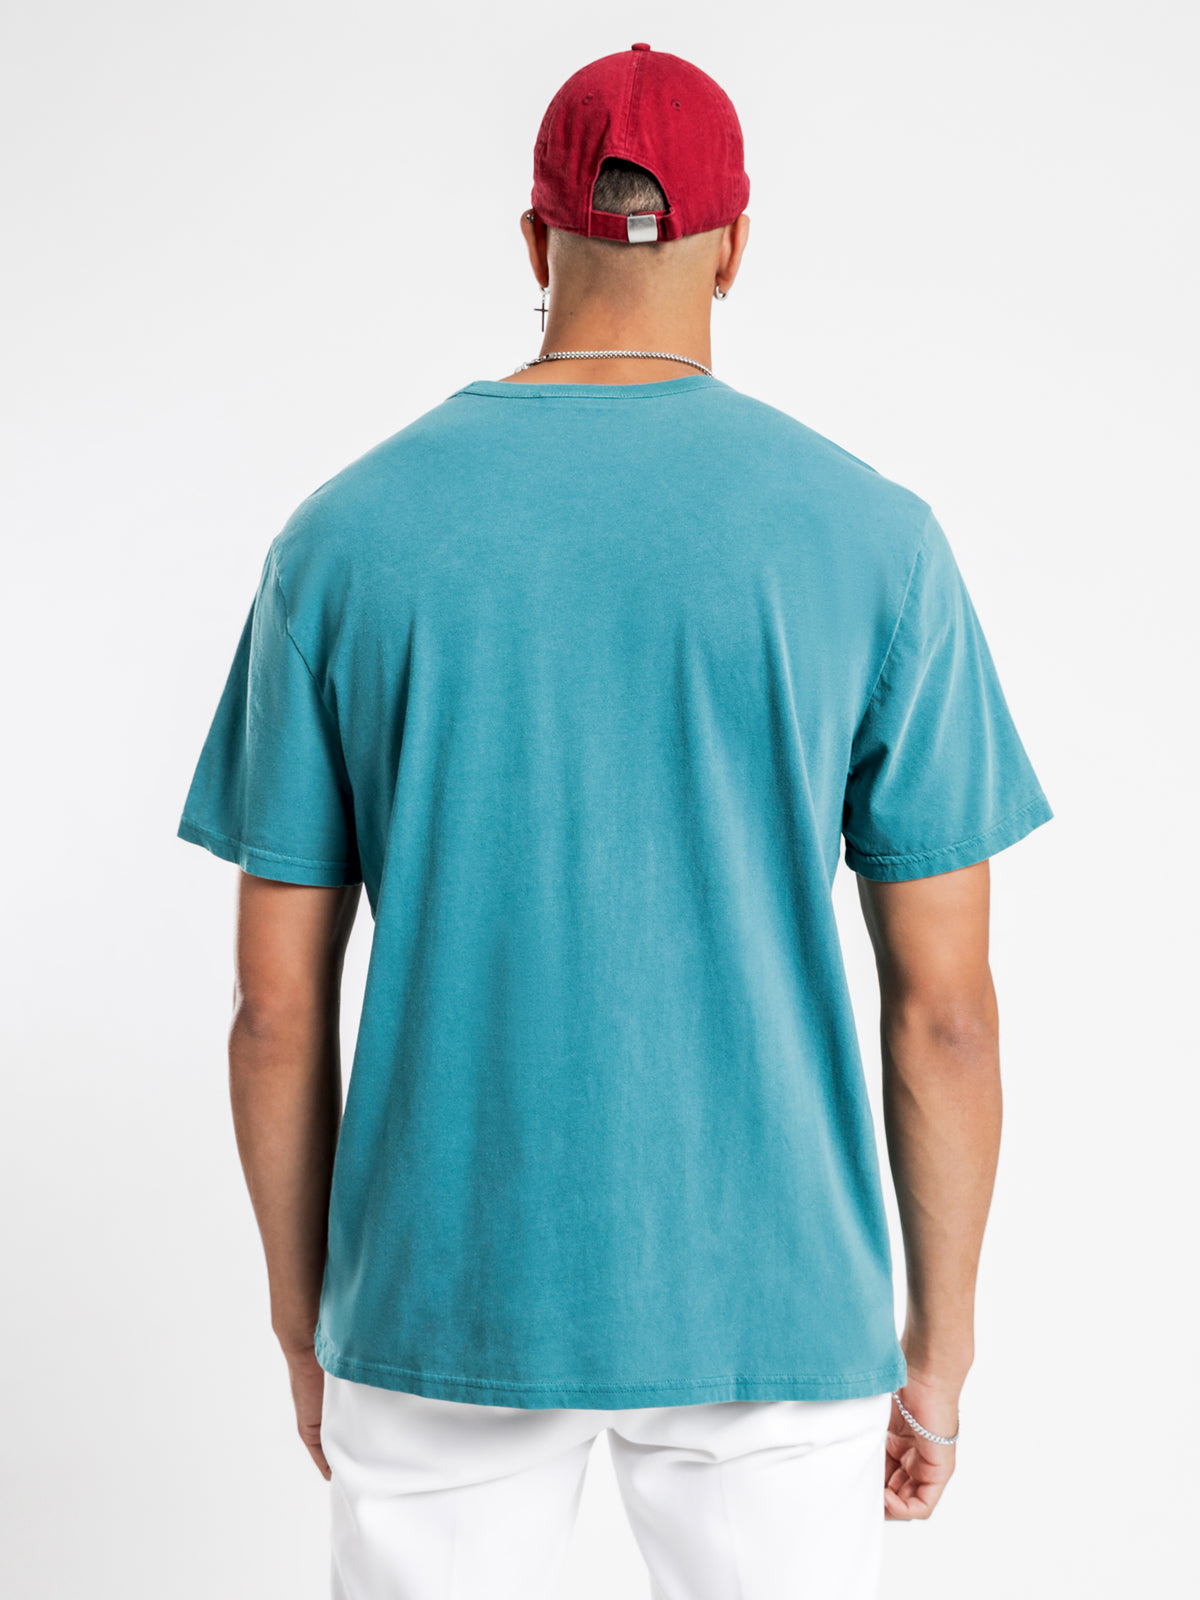 Vintage Dye T-Shirt in Gem Jade